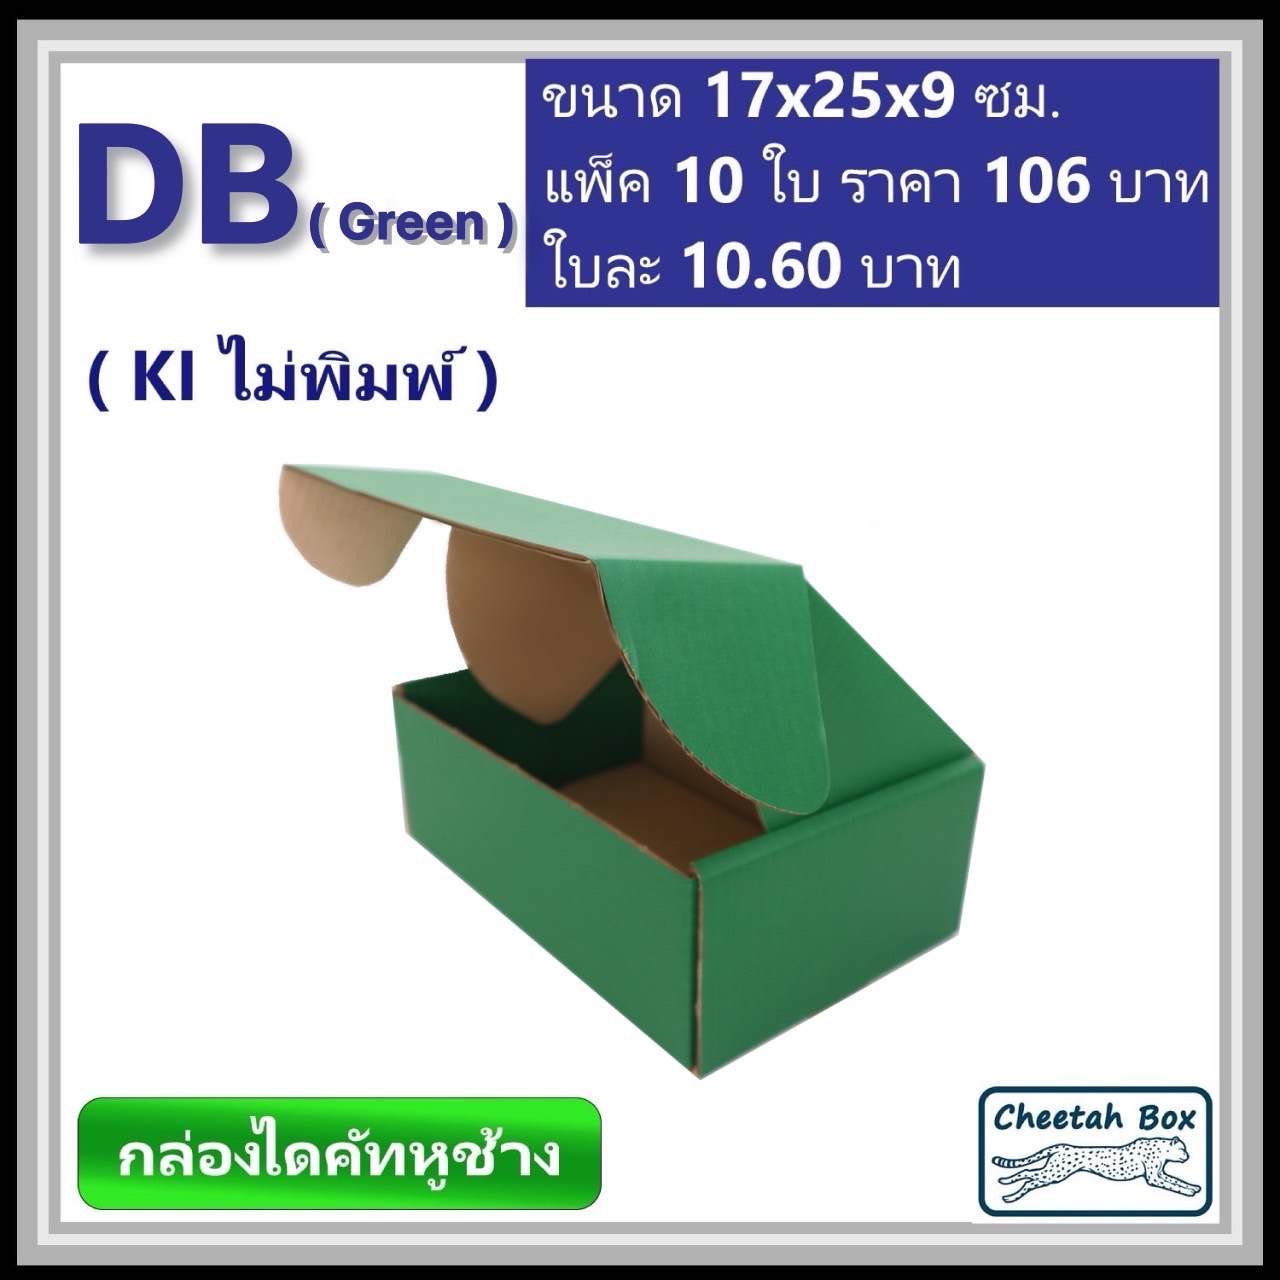 กล่องไดคัทหูช้างขนาด B รหัส DB พิมพ์สีเขียวด้านนอก (Cheetah Box) 17W x 25L x 9H cm.